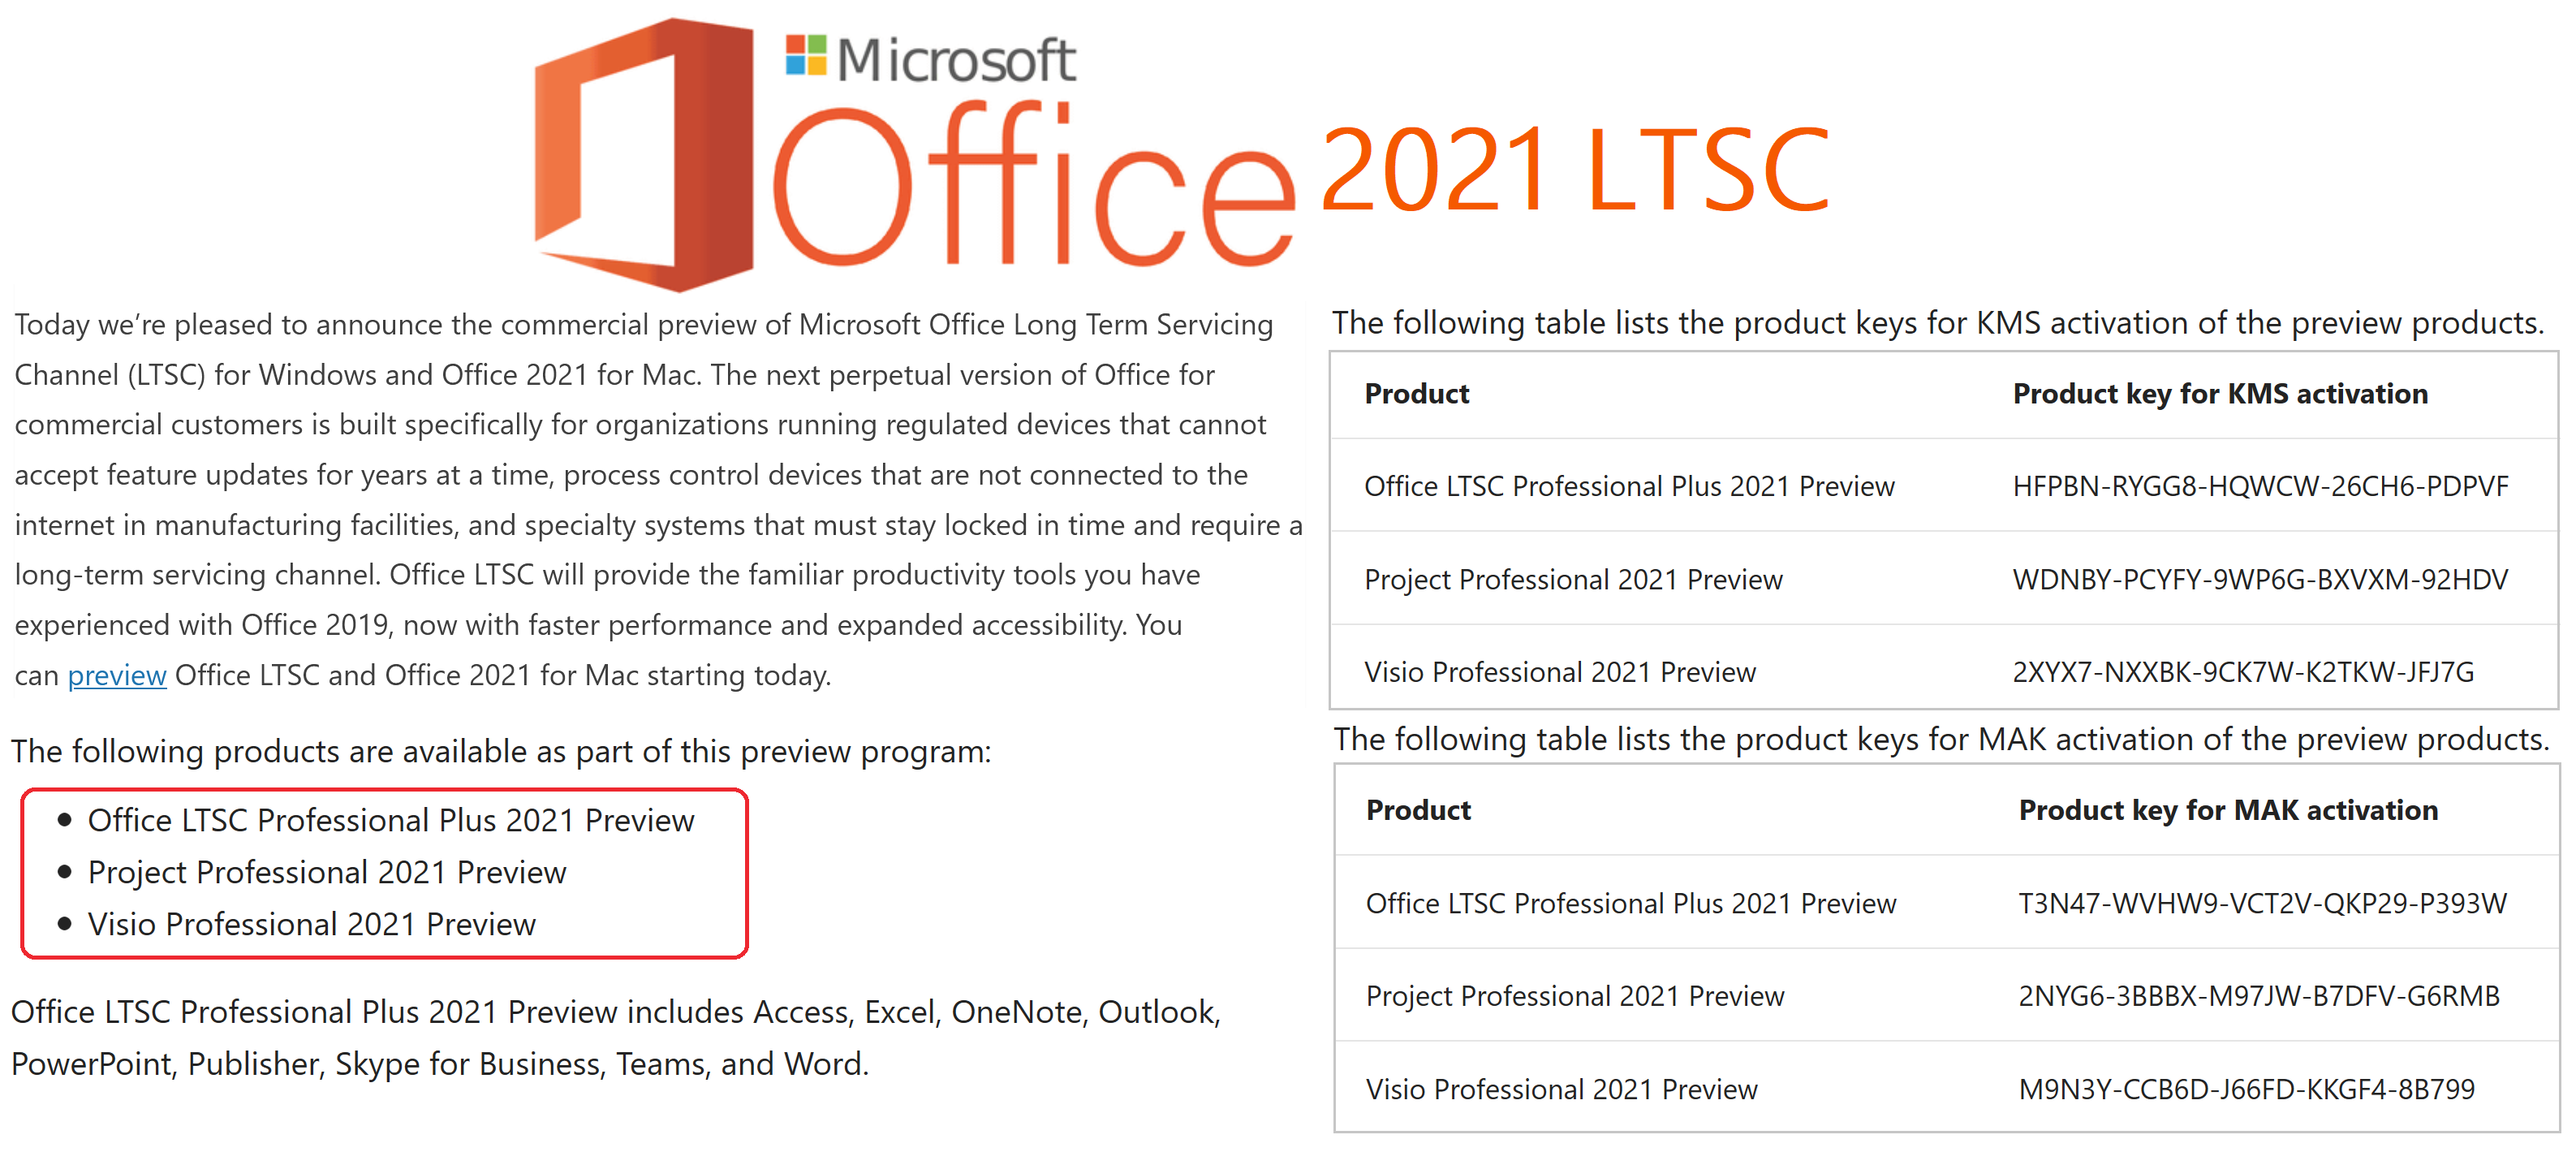 Ключ офис 2021 ltsc лицензионный. Microsoft Office LTSC 2021. Ключ офис 2021 LTSC. Microsoft Office LTSC professional Plus 2021 ключи. Ключи для офиса LTSC профессиональный плюс 2021.